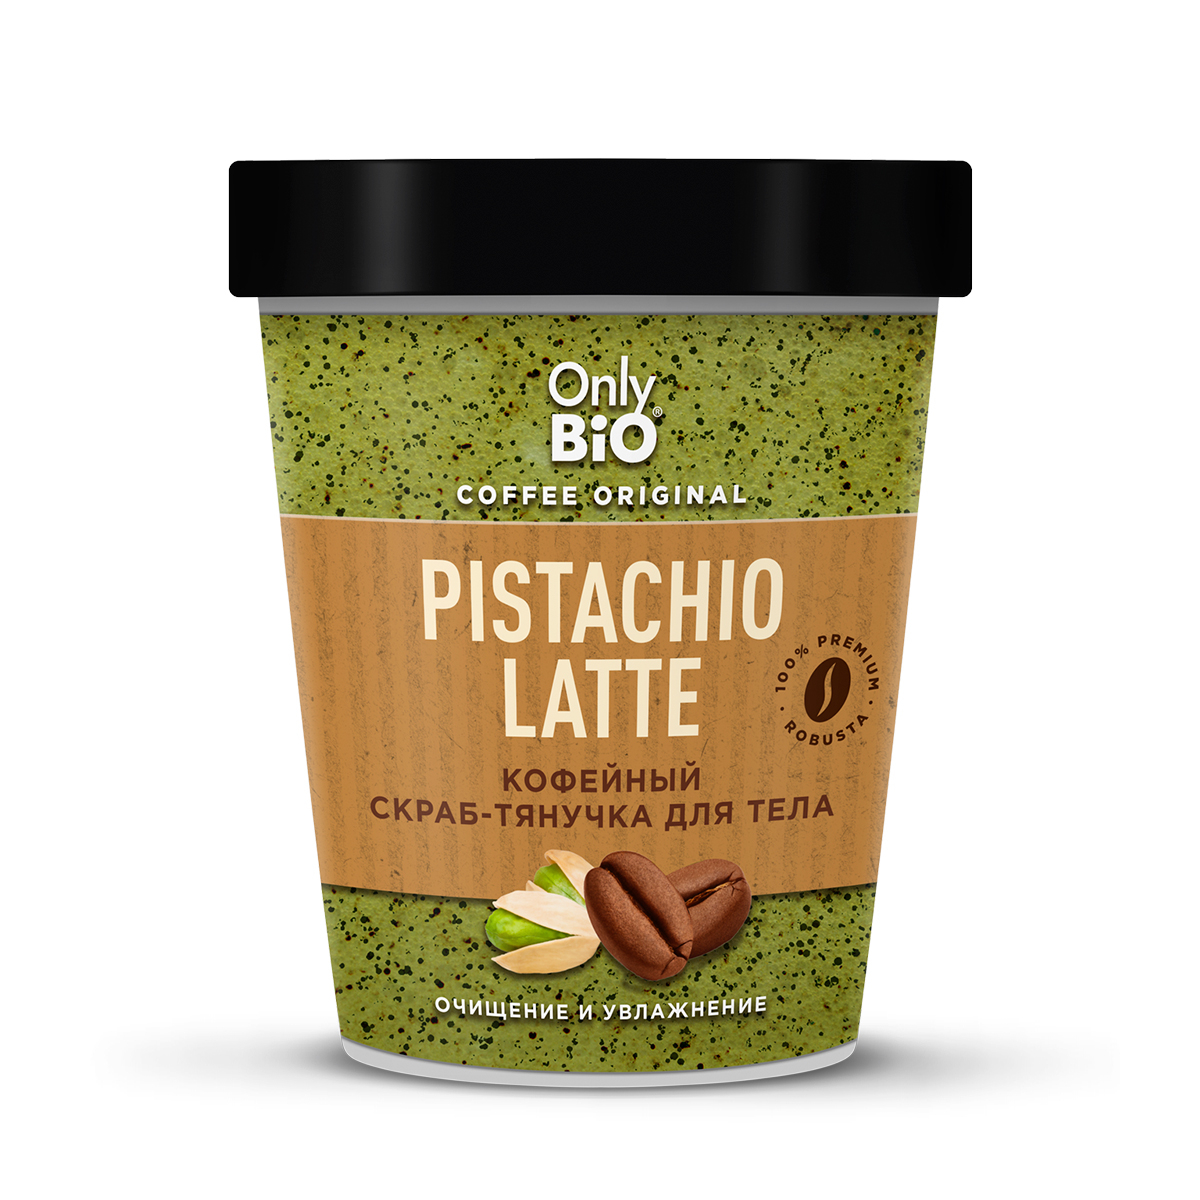 Скраб-тянучка для тела Only Bio Coffee Original Pistachio Latte кофейный, 230 мл greena avocadova скраб для тела твердый кофейный 100